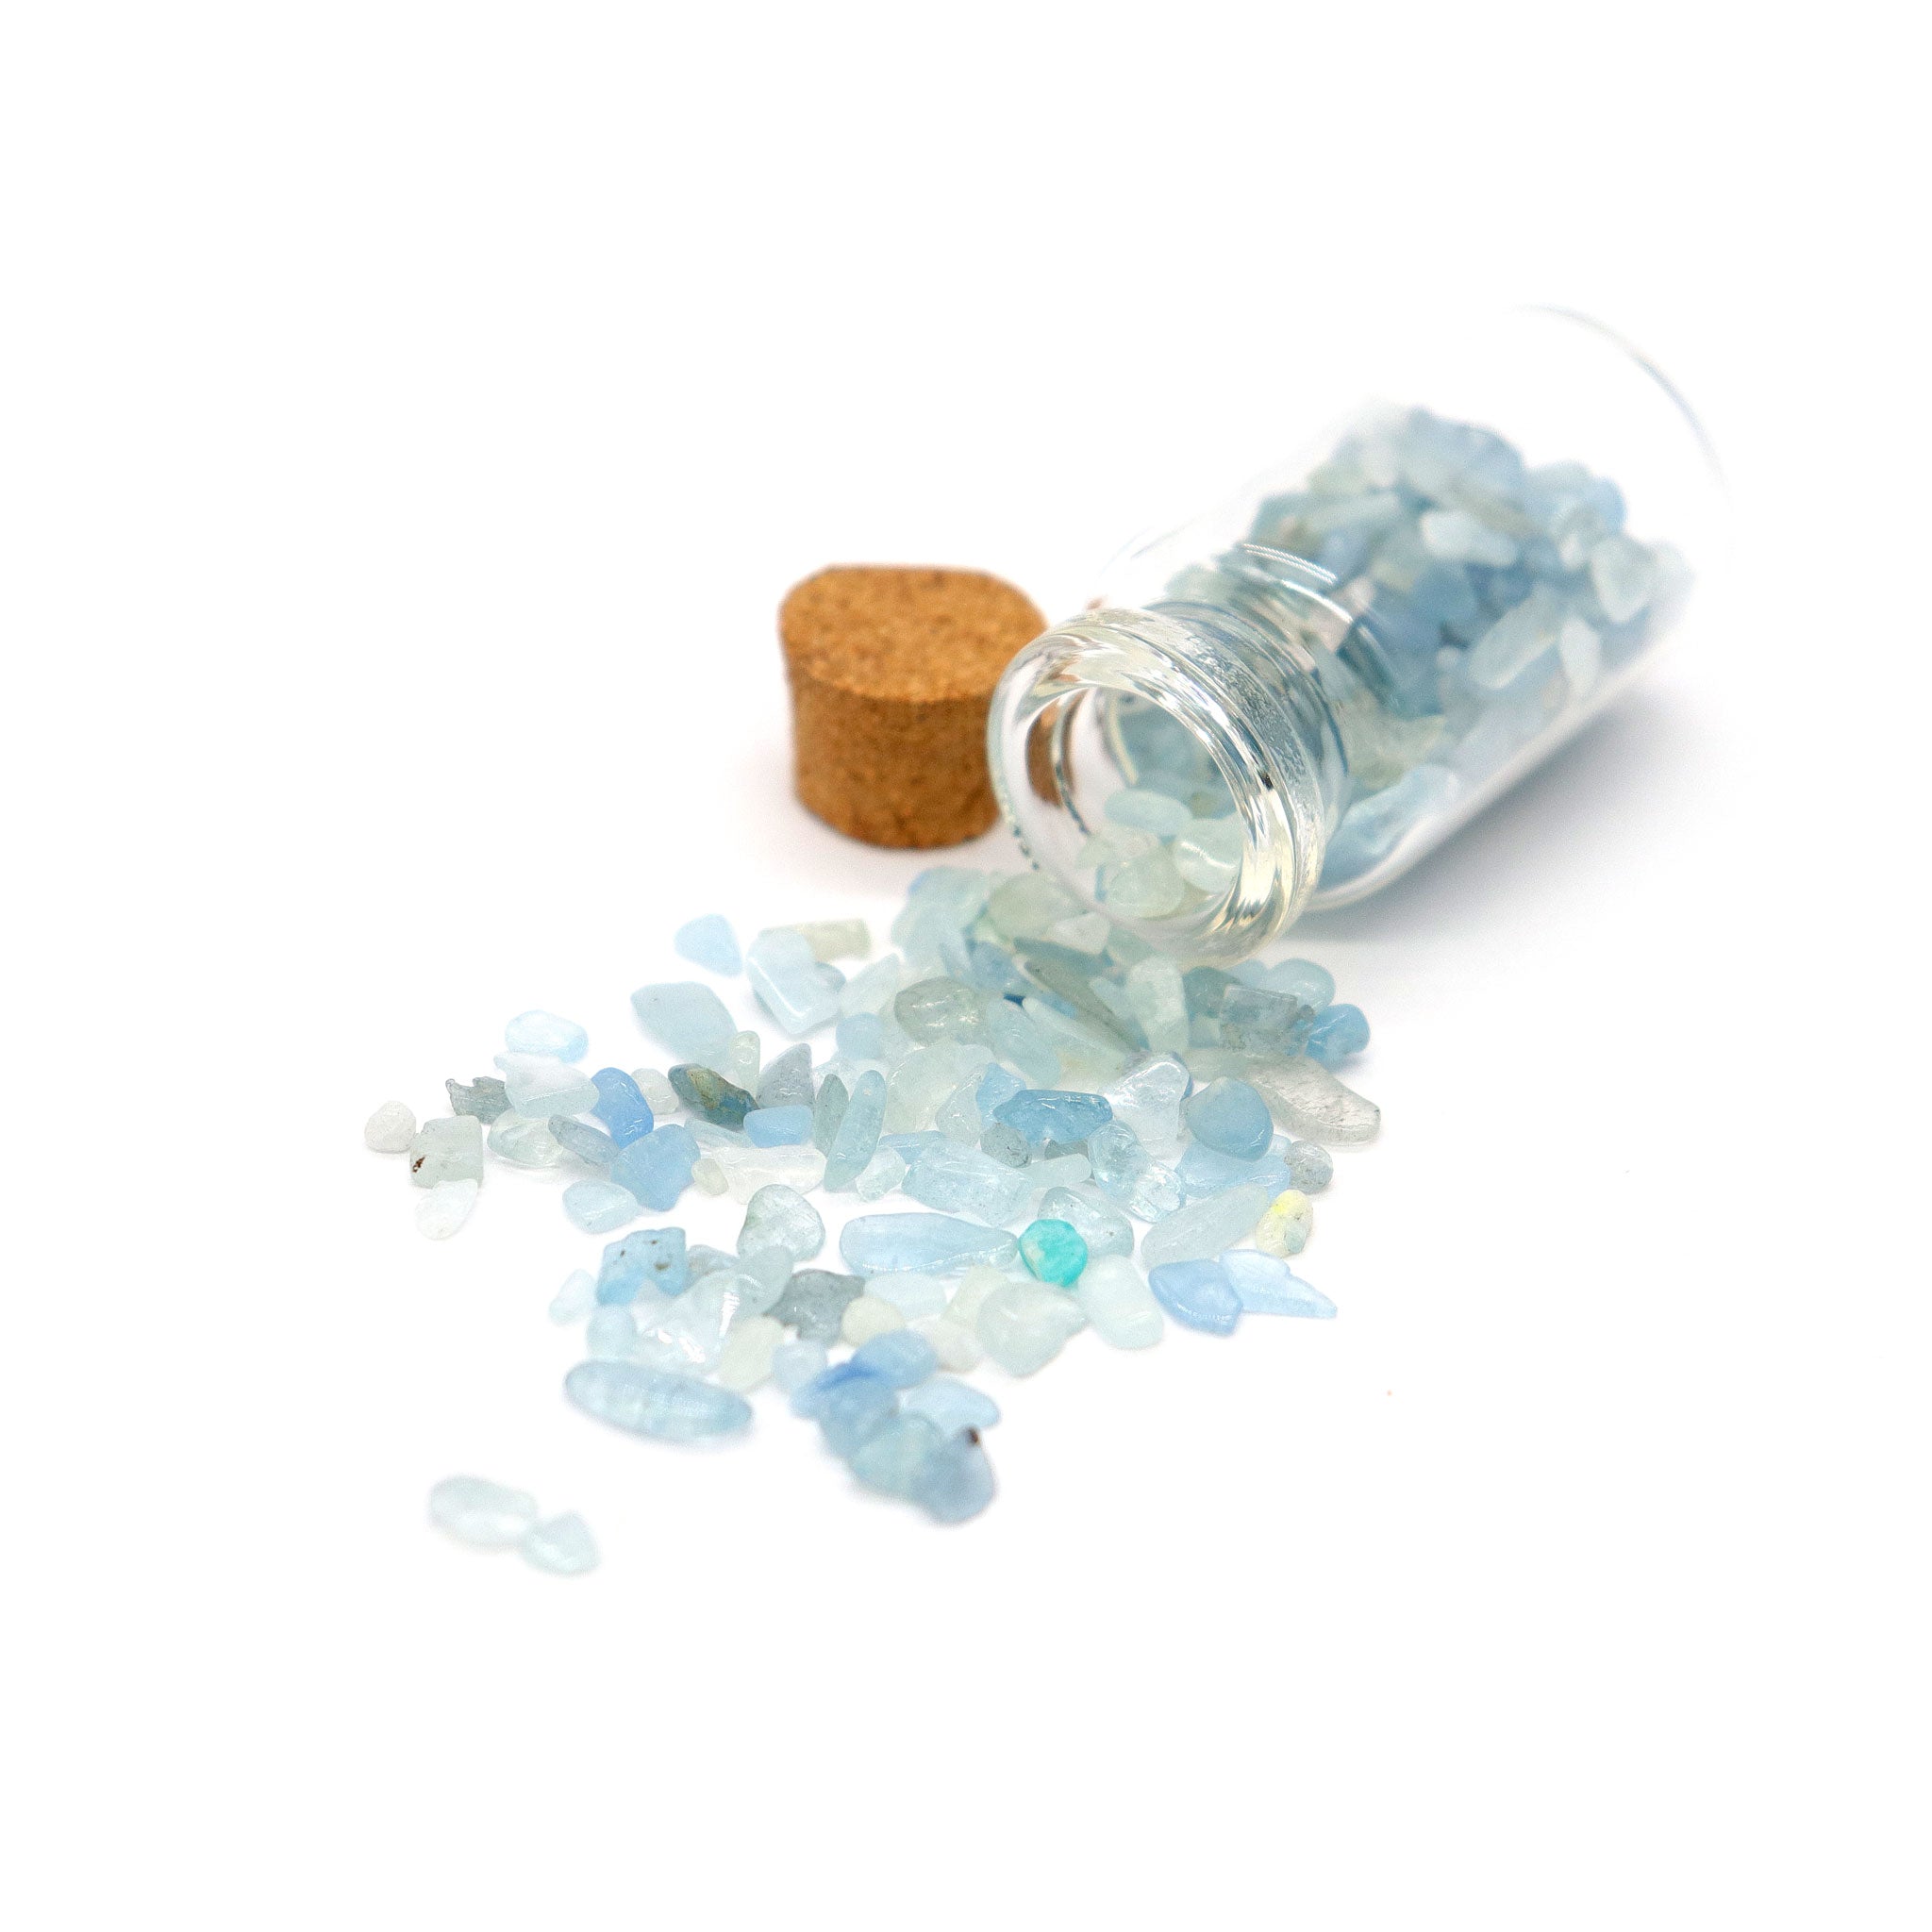 Aquamarine Gemstones in Bottle - 13 Moons